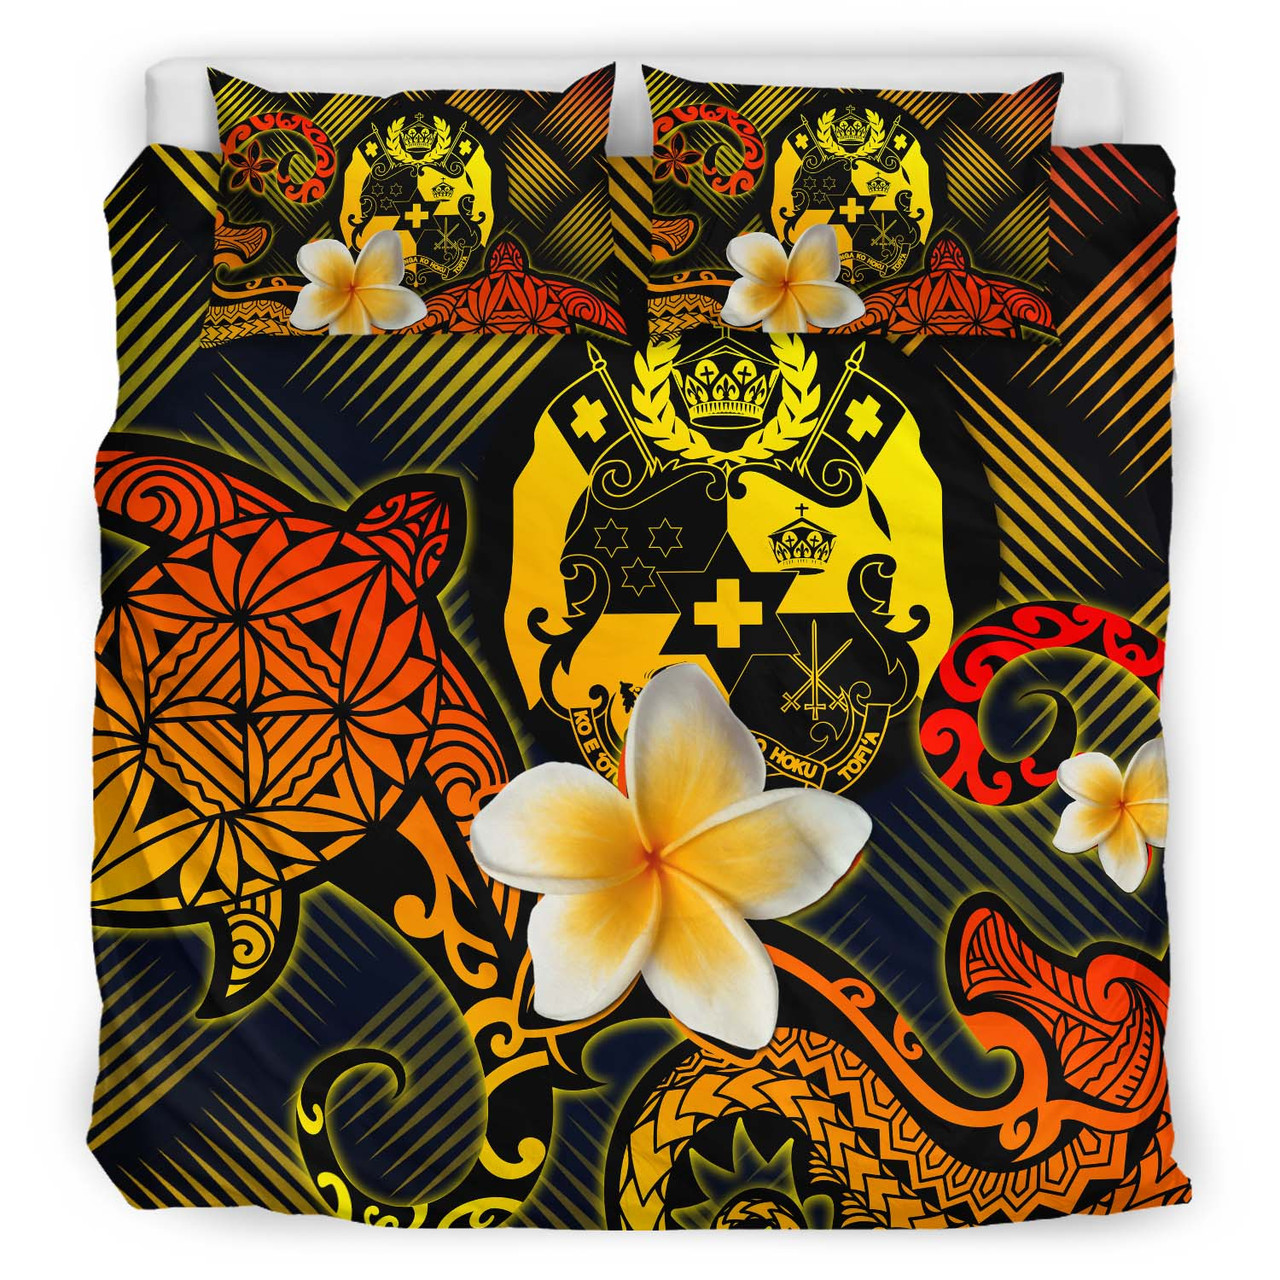 Tonga Polynesian Bedding Set - Lauhala Turtle Plumeria Tropical